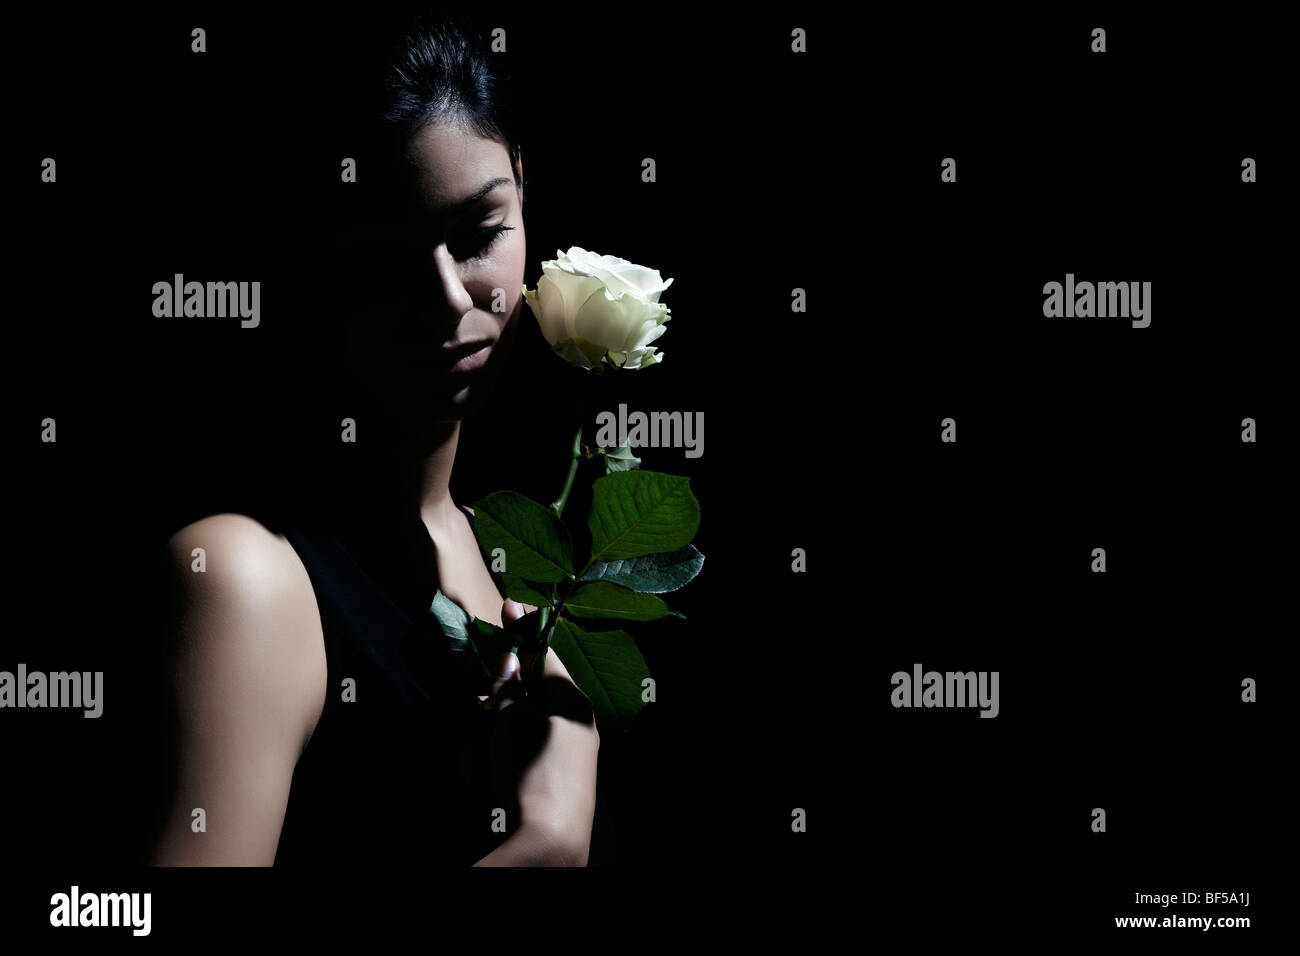 Junge dunkelhaarige Frau sucht traurig auf den Boden und hielt eine weiße Rose in der hand Stockfoto